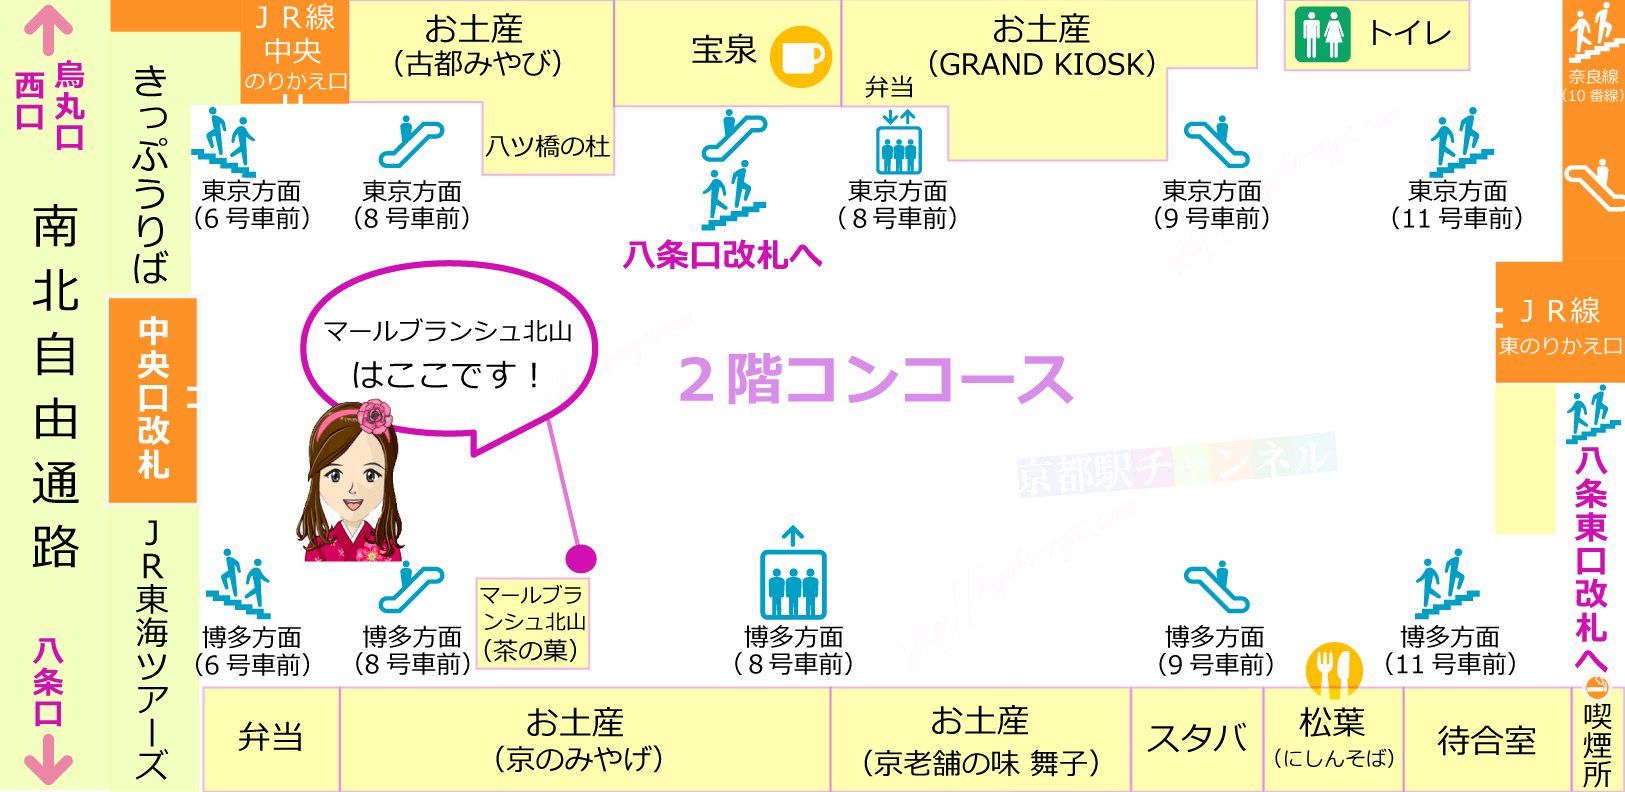 京都駅の新幹線コンコースのマールブランシュ北山のショップの地図